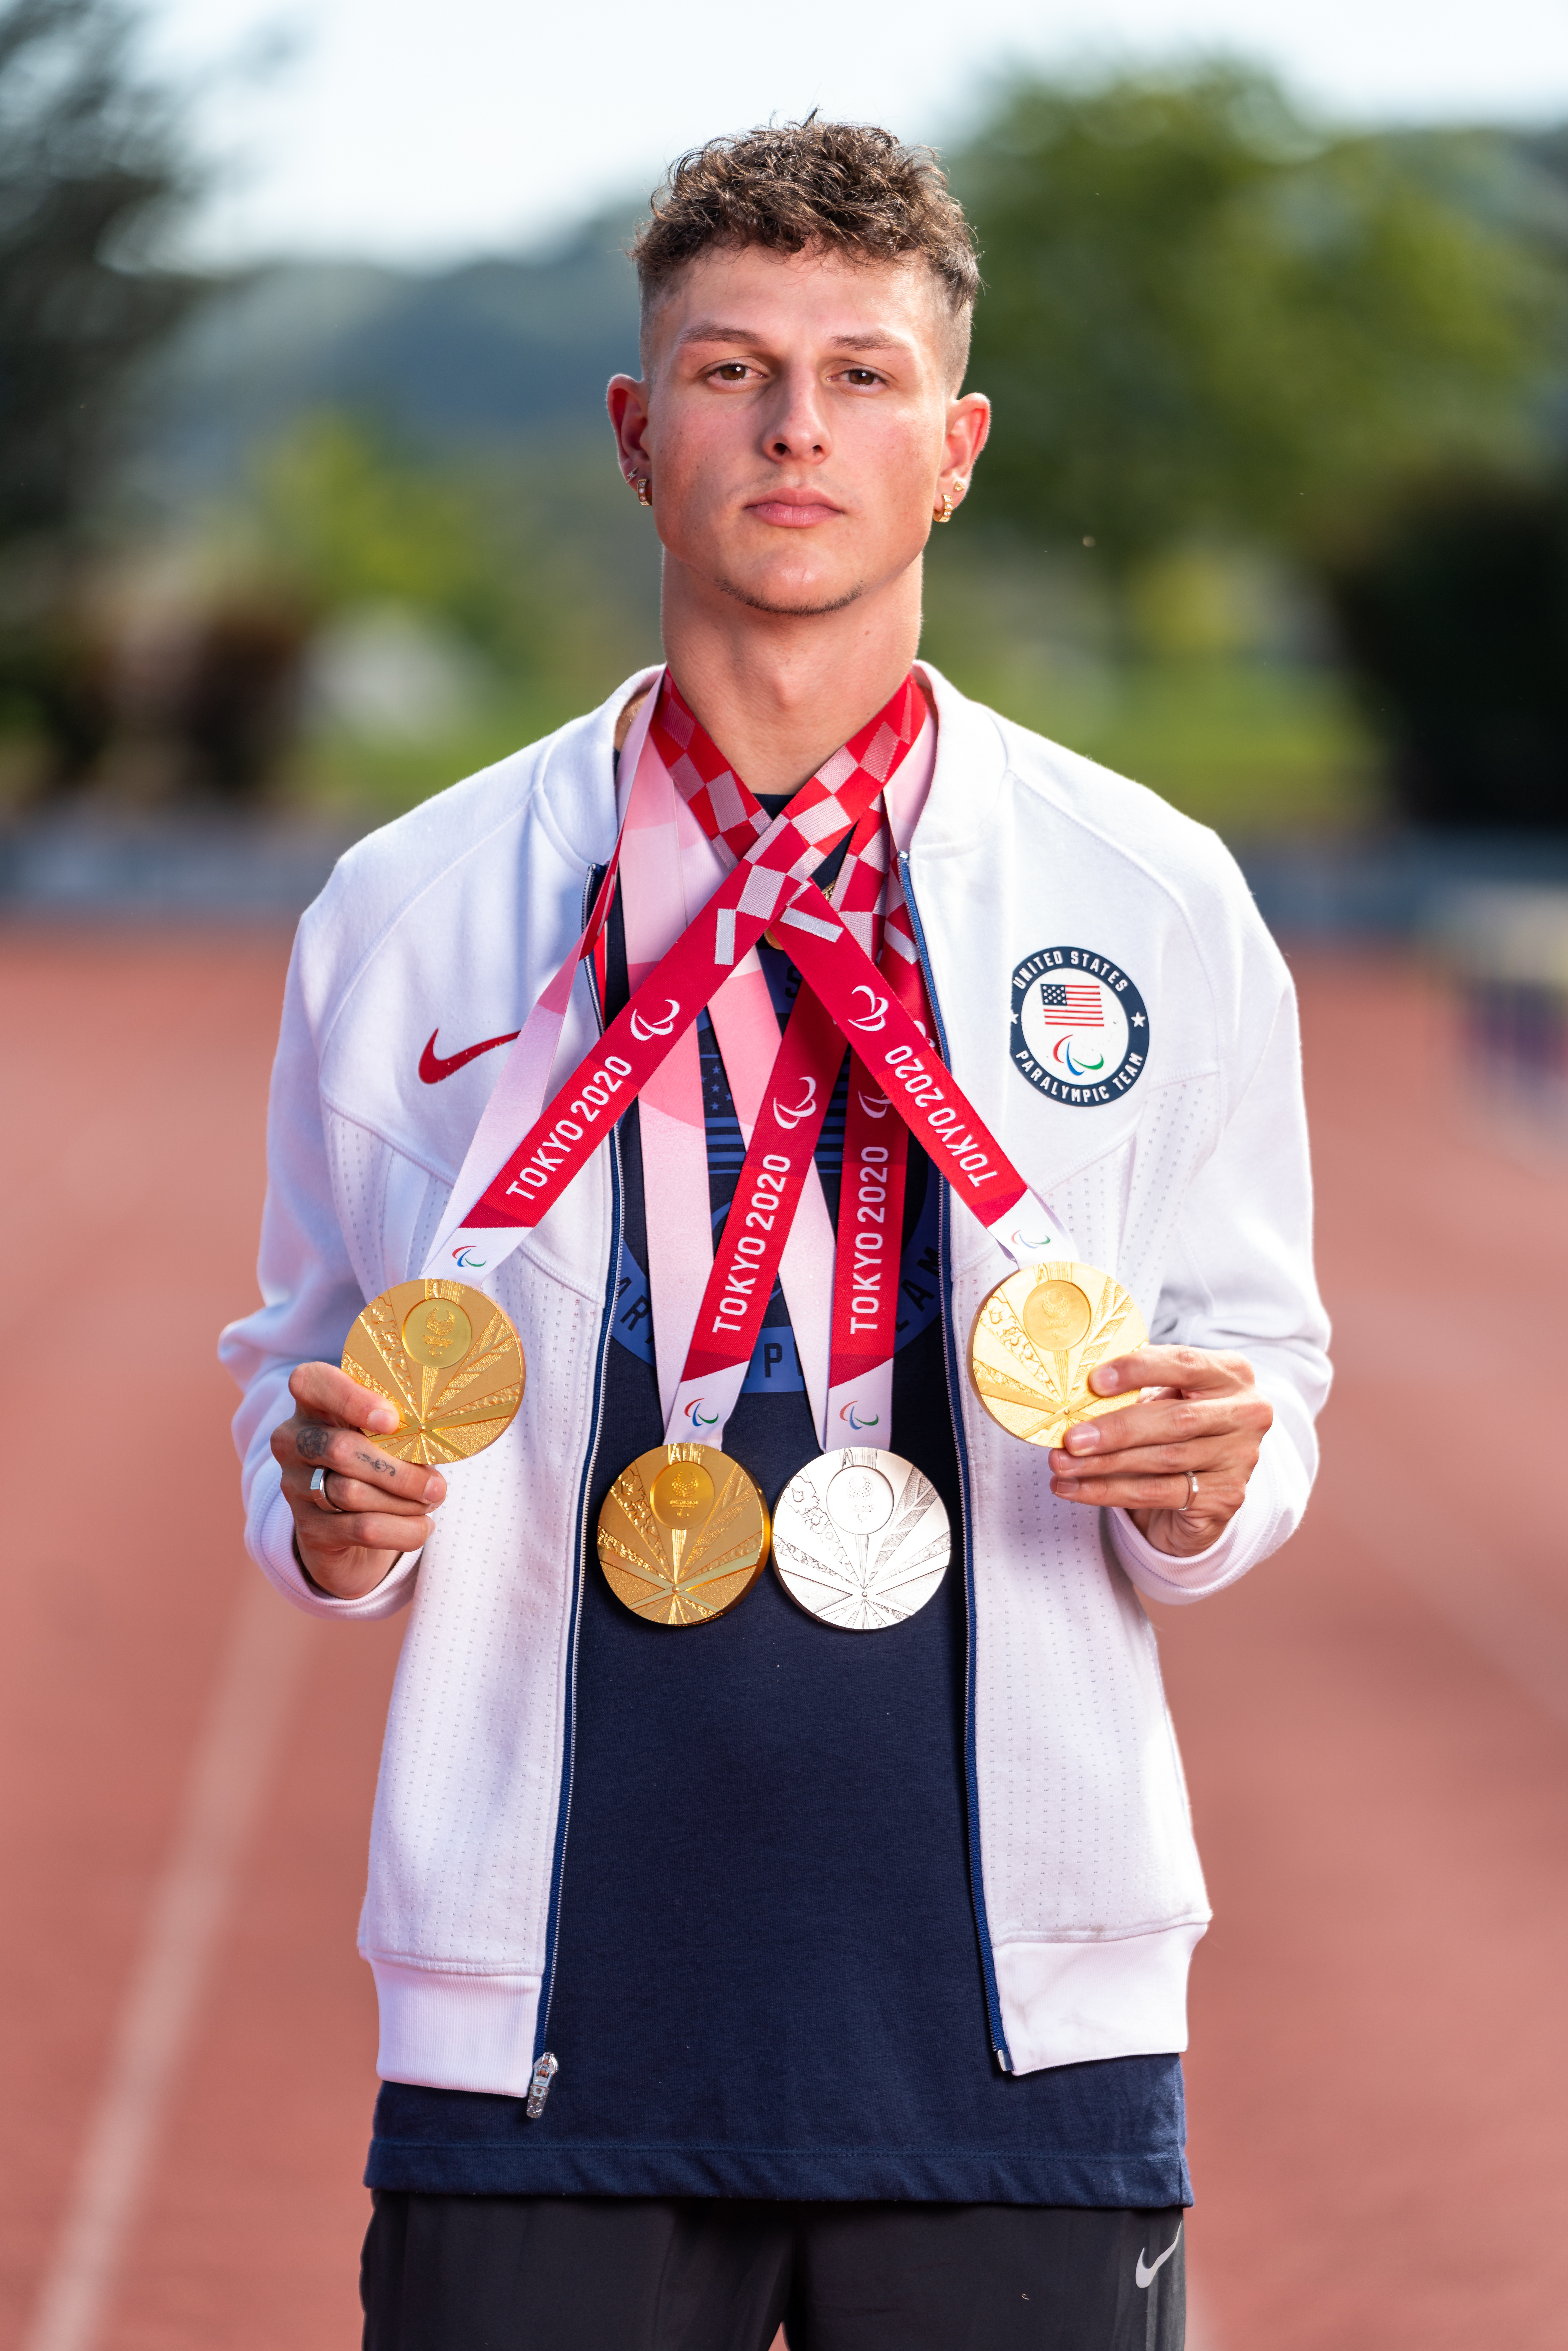 Nick Mayhugh con tres medallas de oro y una medalla de plata